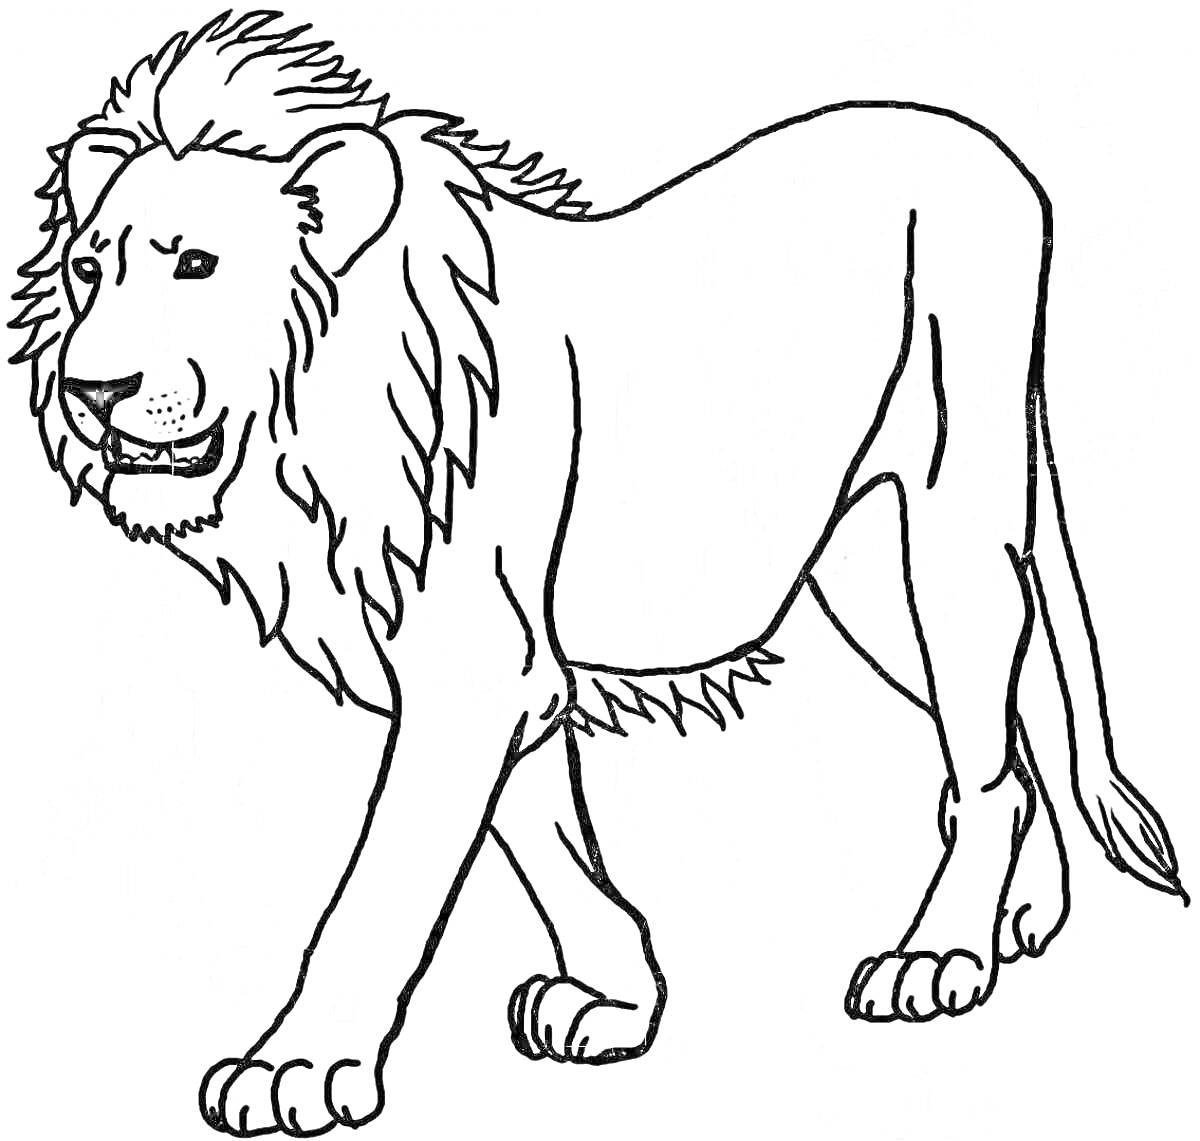 Раскраска Лев идет, изображение льва в движении